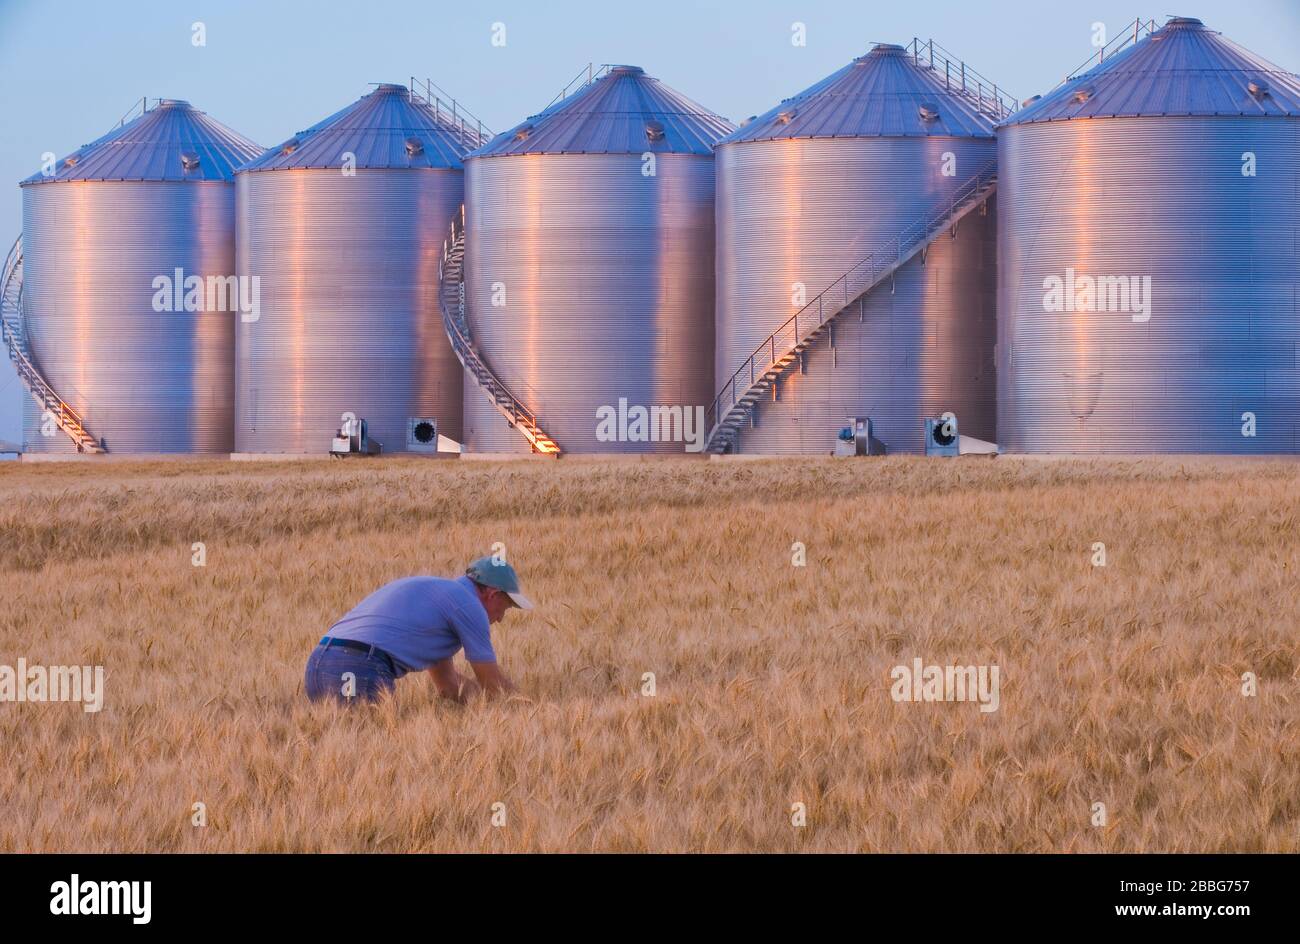 Un granjero examina trigo de invierno maduro, los compartimientos del grano en el fondo, cerca de Holanda, Manitoba, Canadá Foto de stock